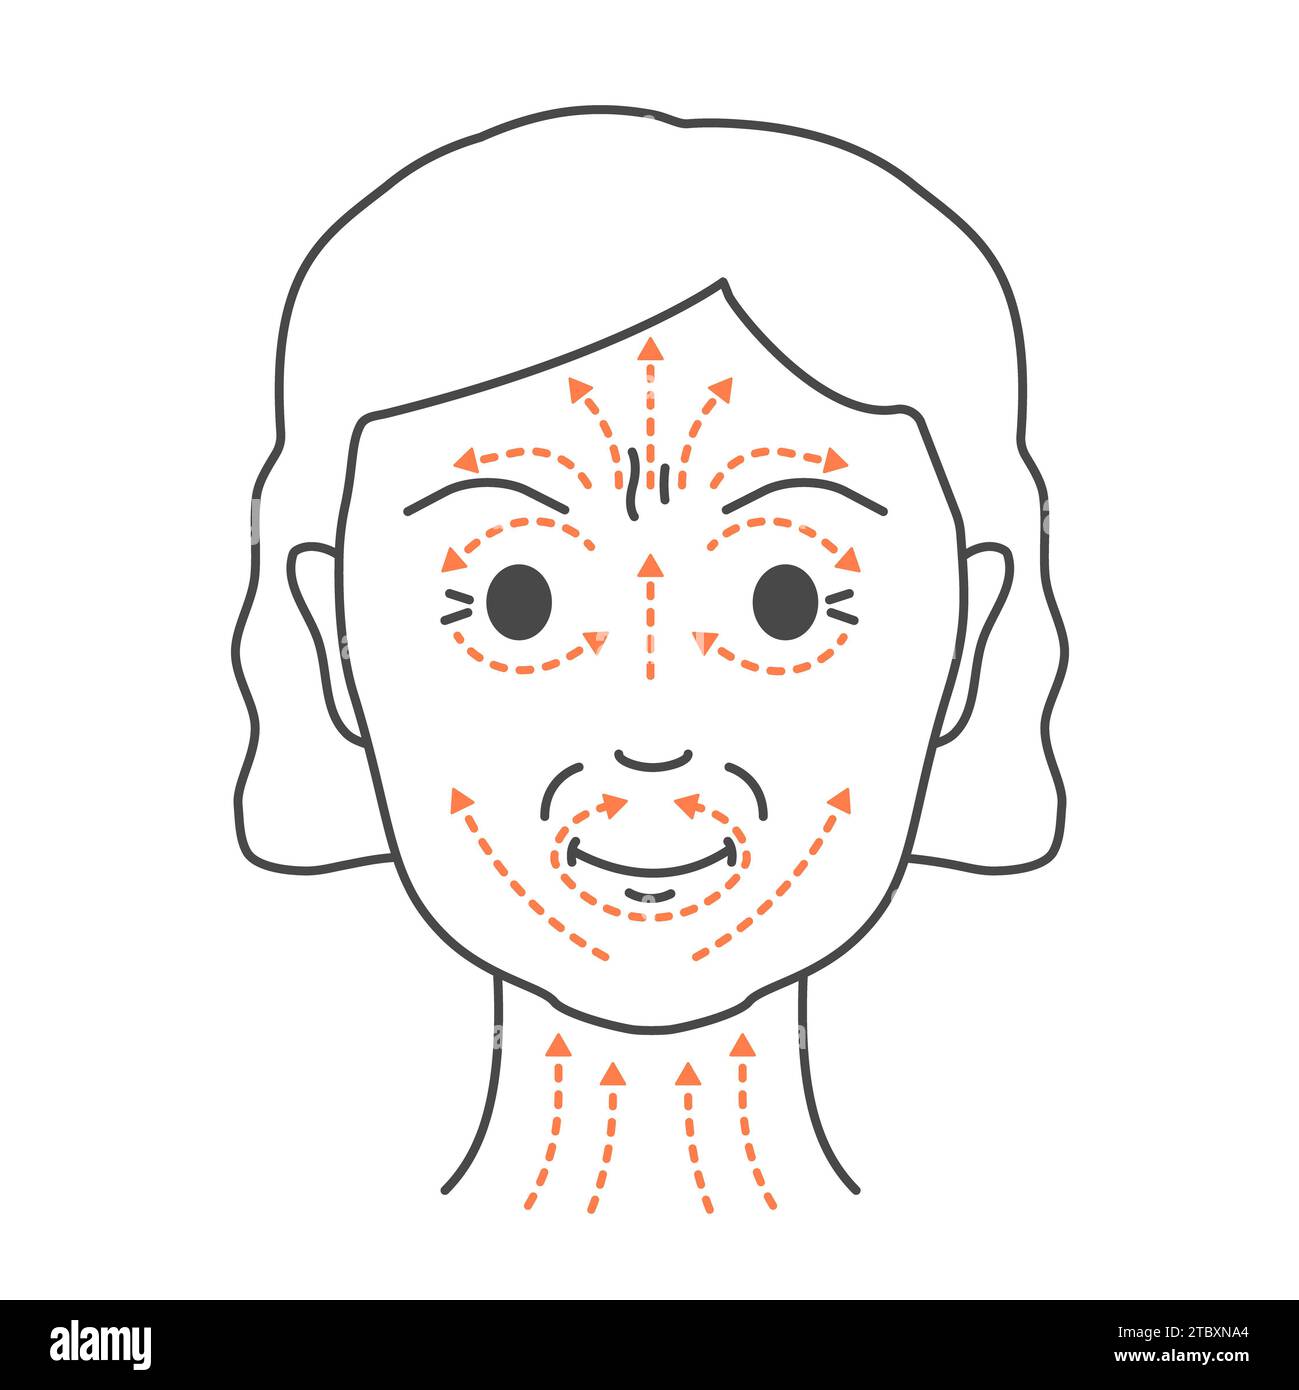 Massaggio facciale, illustrazione concettuale. Foto Stock